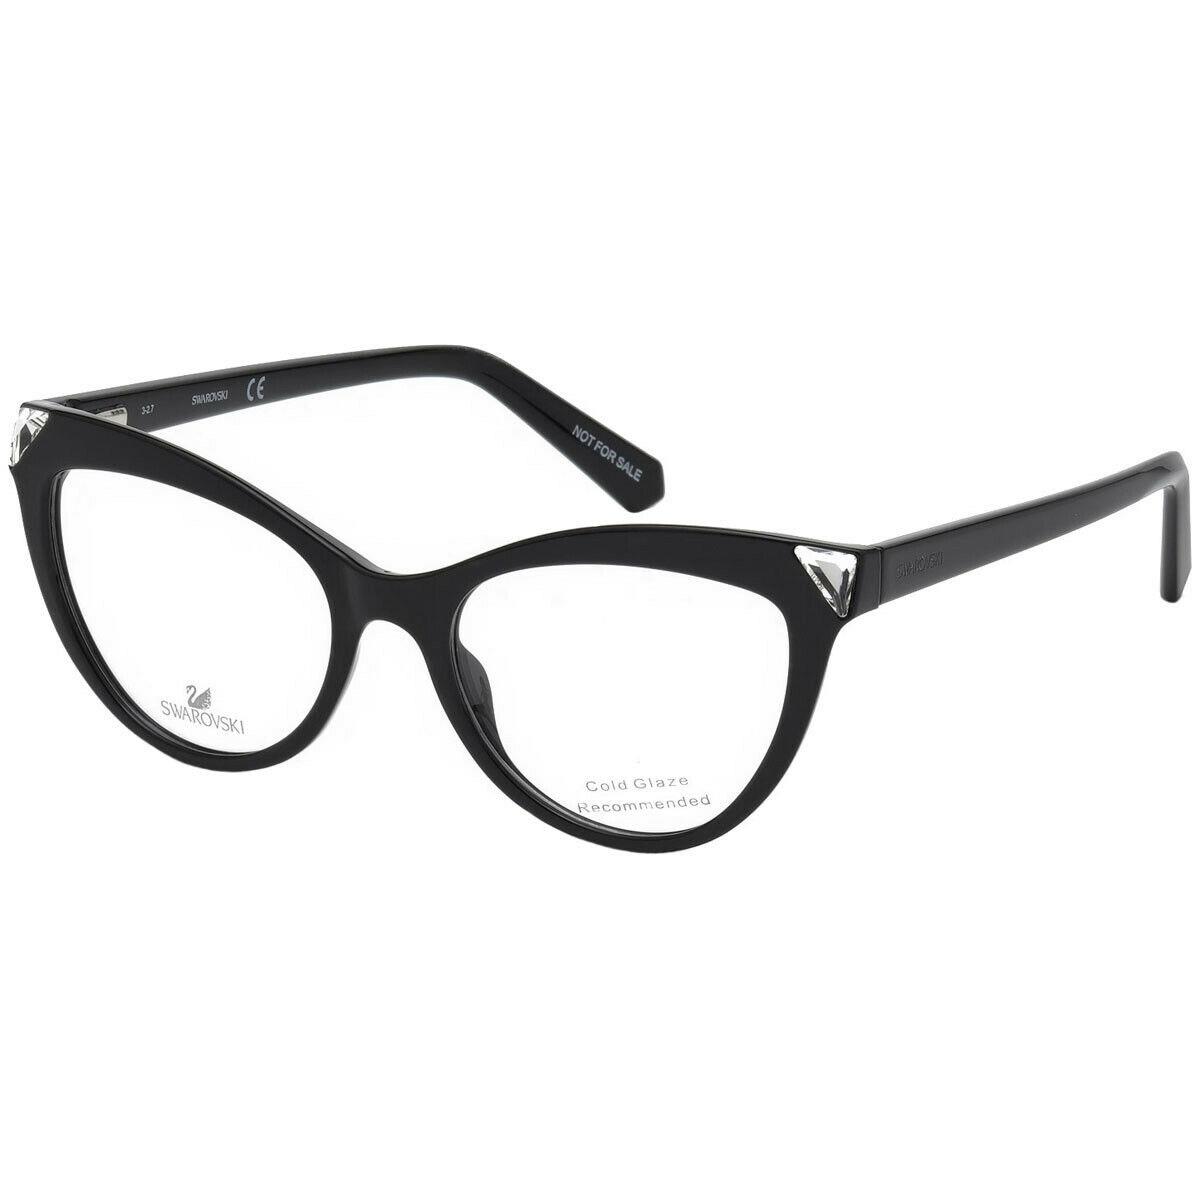 Swarovski SK5268 001 Eyeglasses Shiny Black Frame 51mm